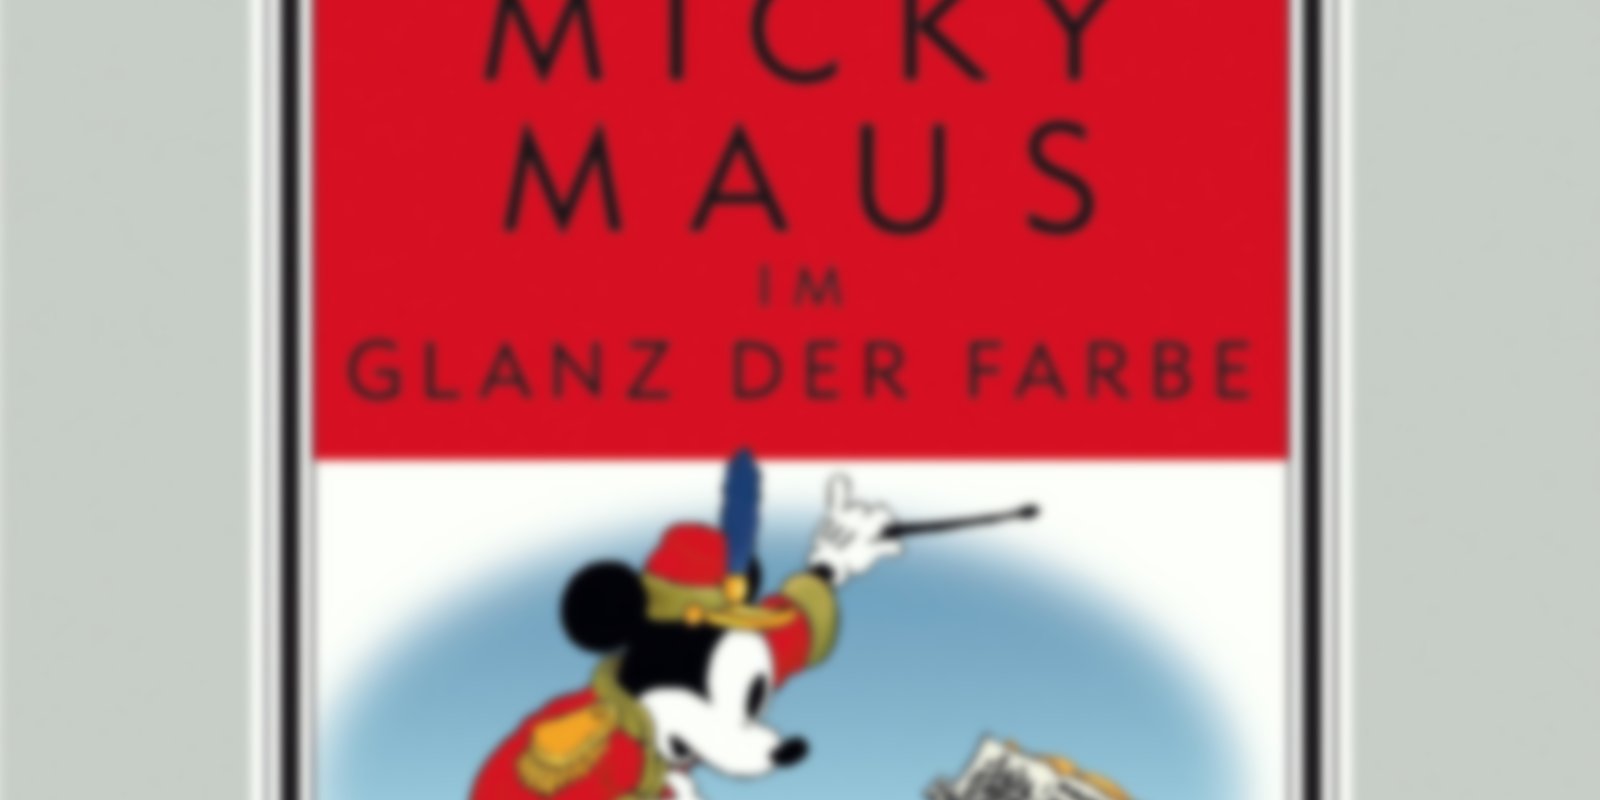 Walt Disney Kostbarkeiten - Micky Maus im Glanz der Farbe